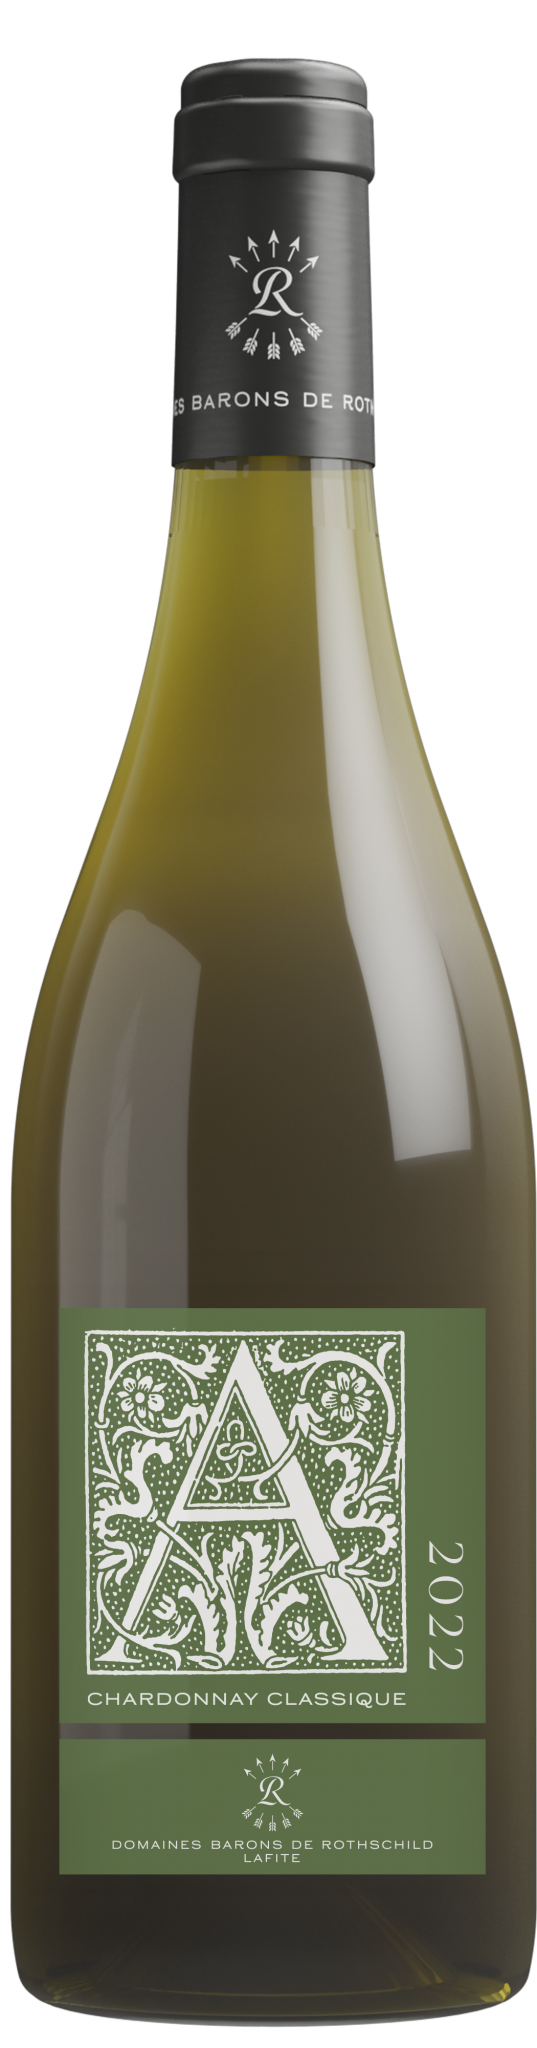 A d'Aussières Chardonnay